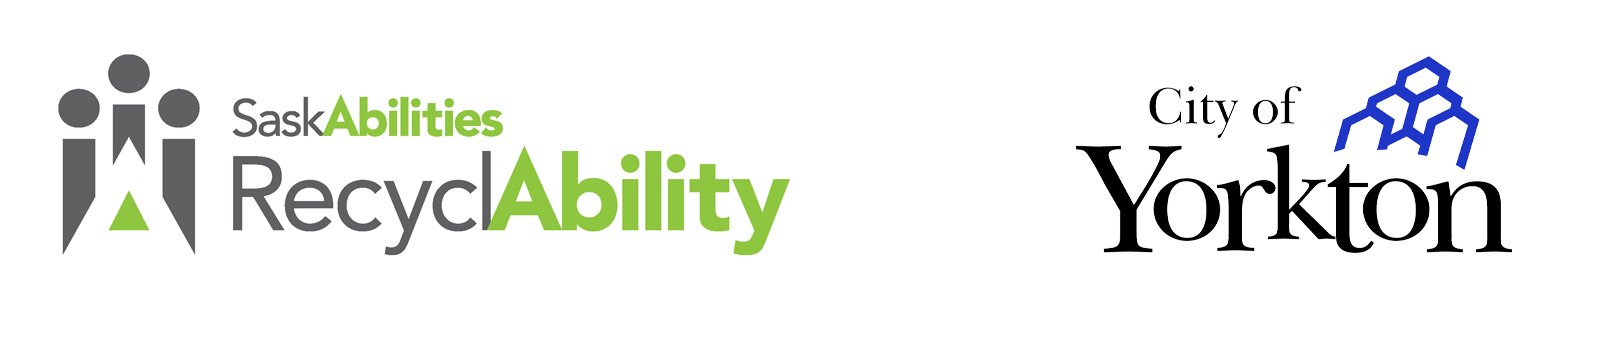 RecyclAbility & City of Yorkton logo